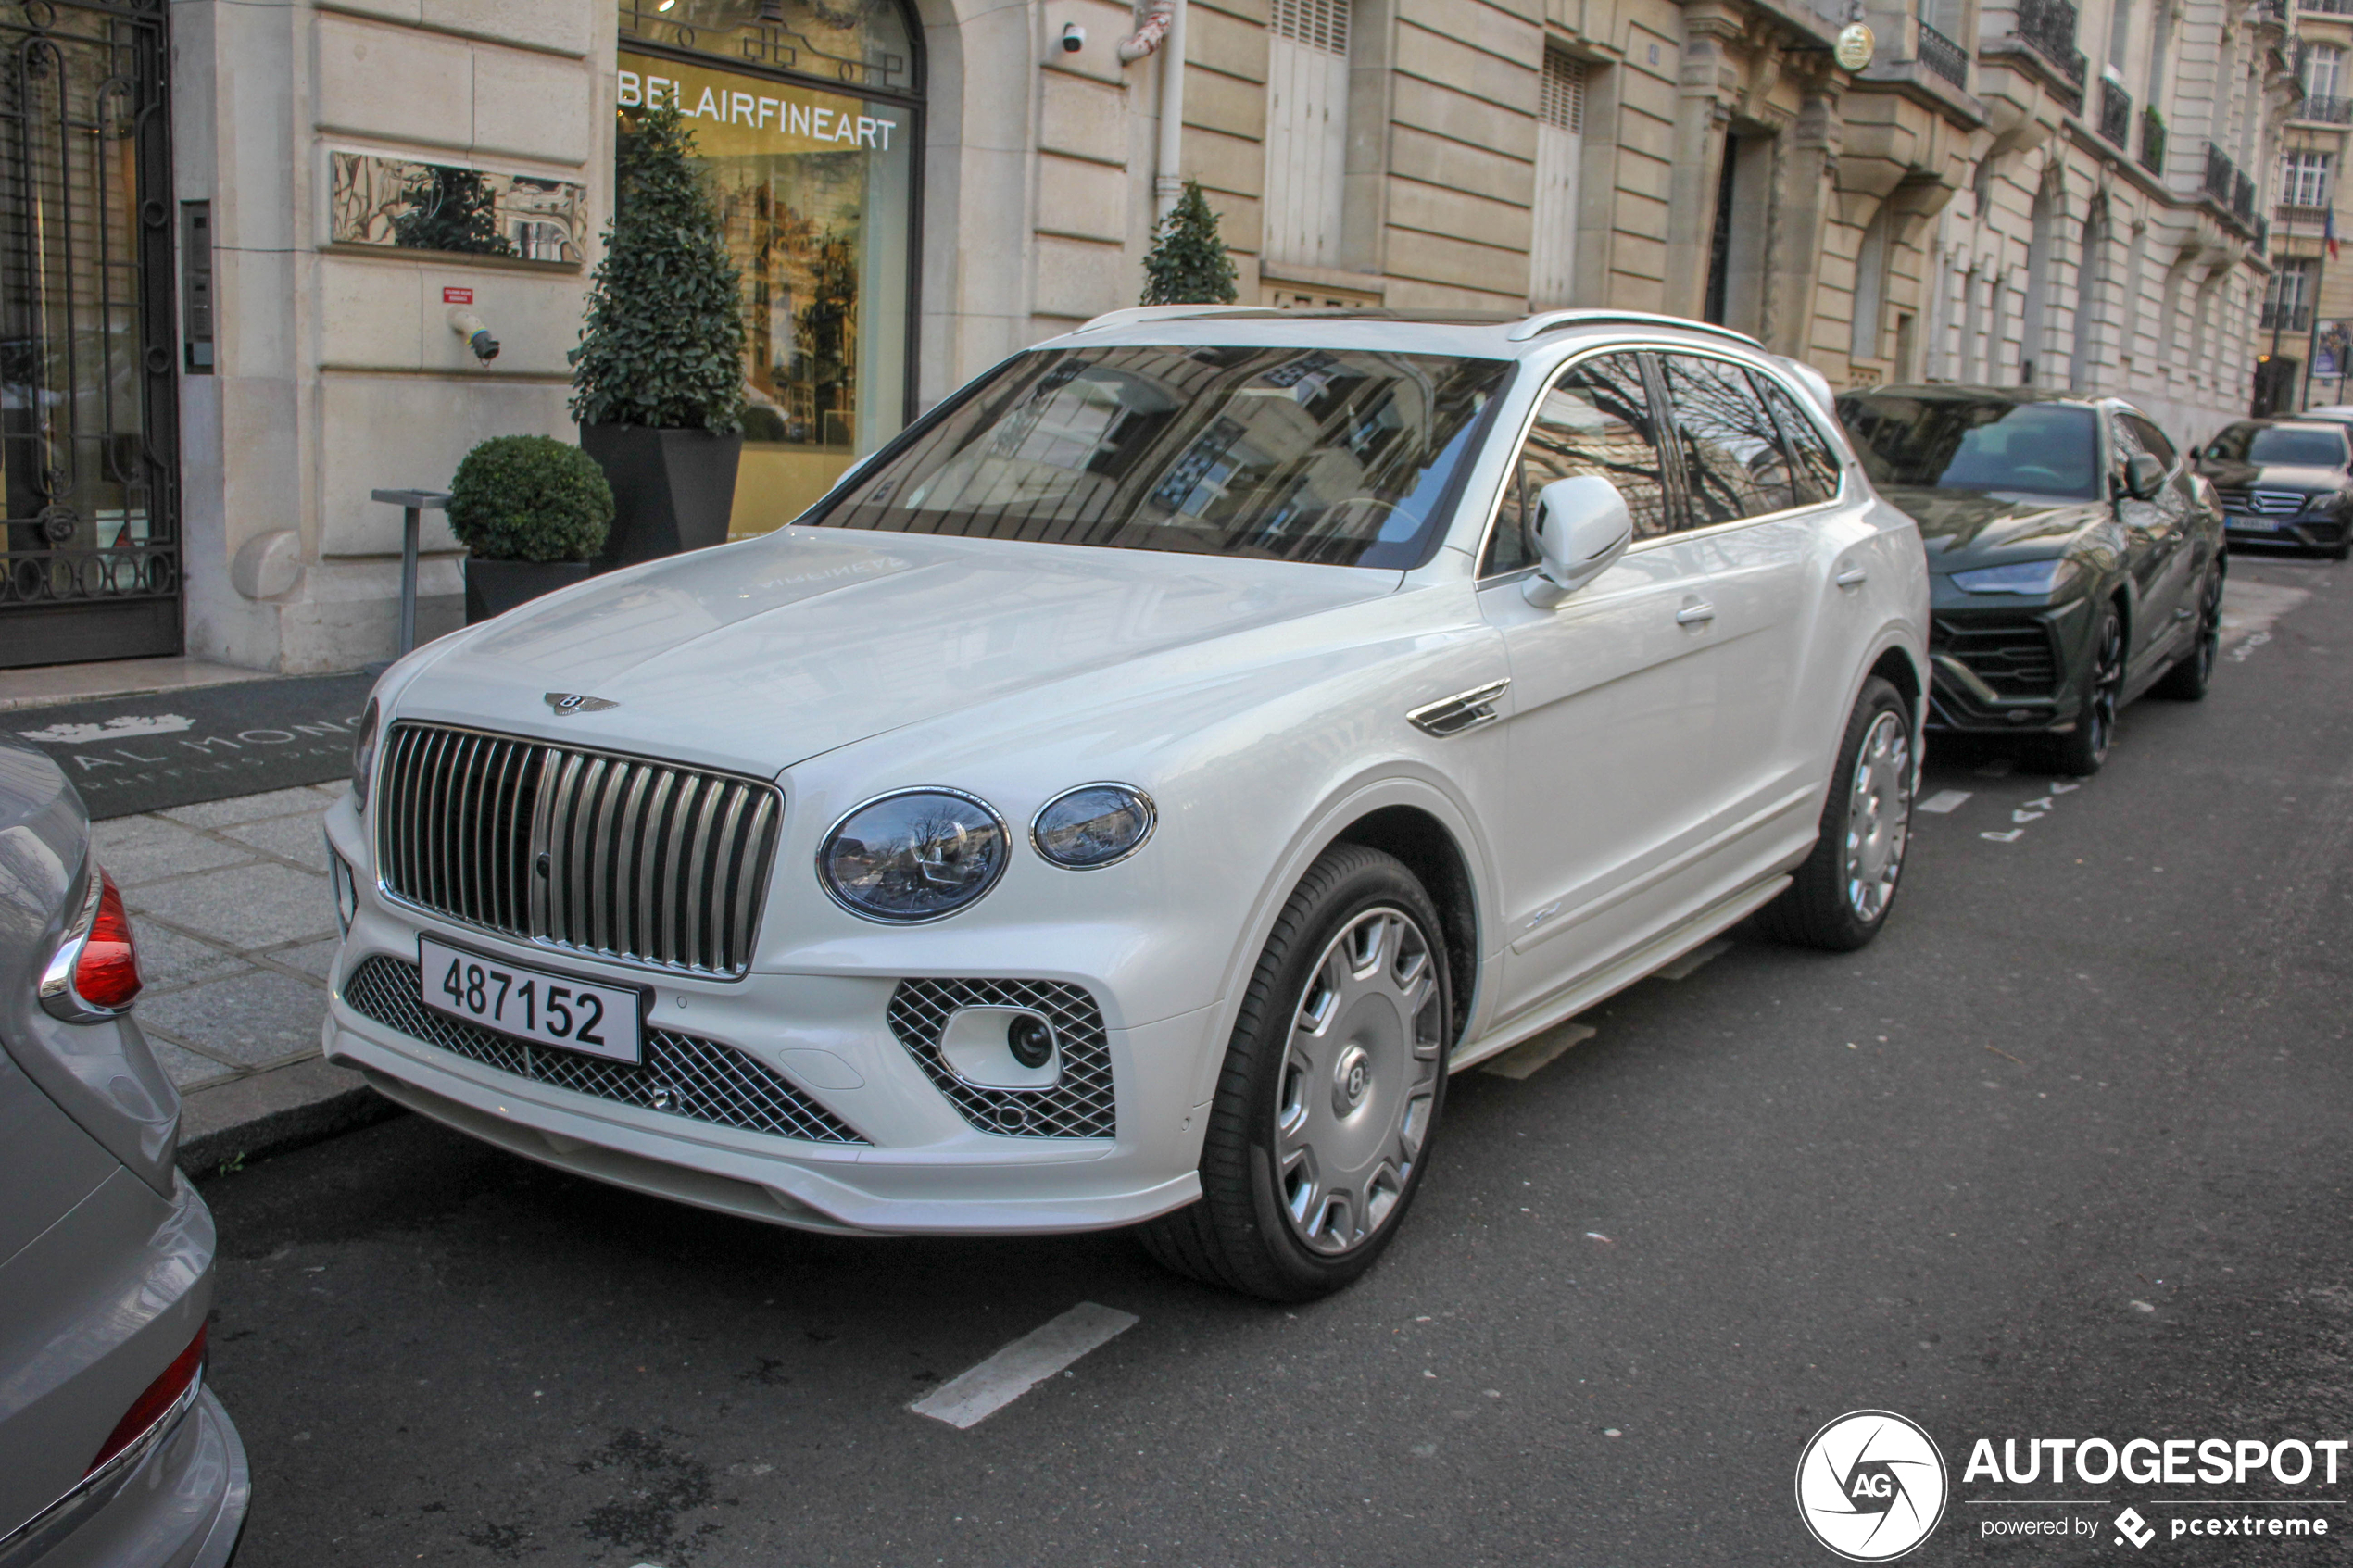 Exclusive Bentleys from Qatar turn up in Paris